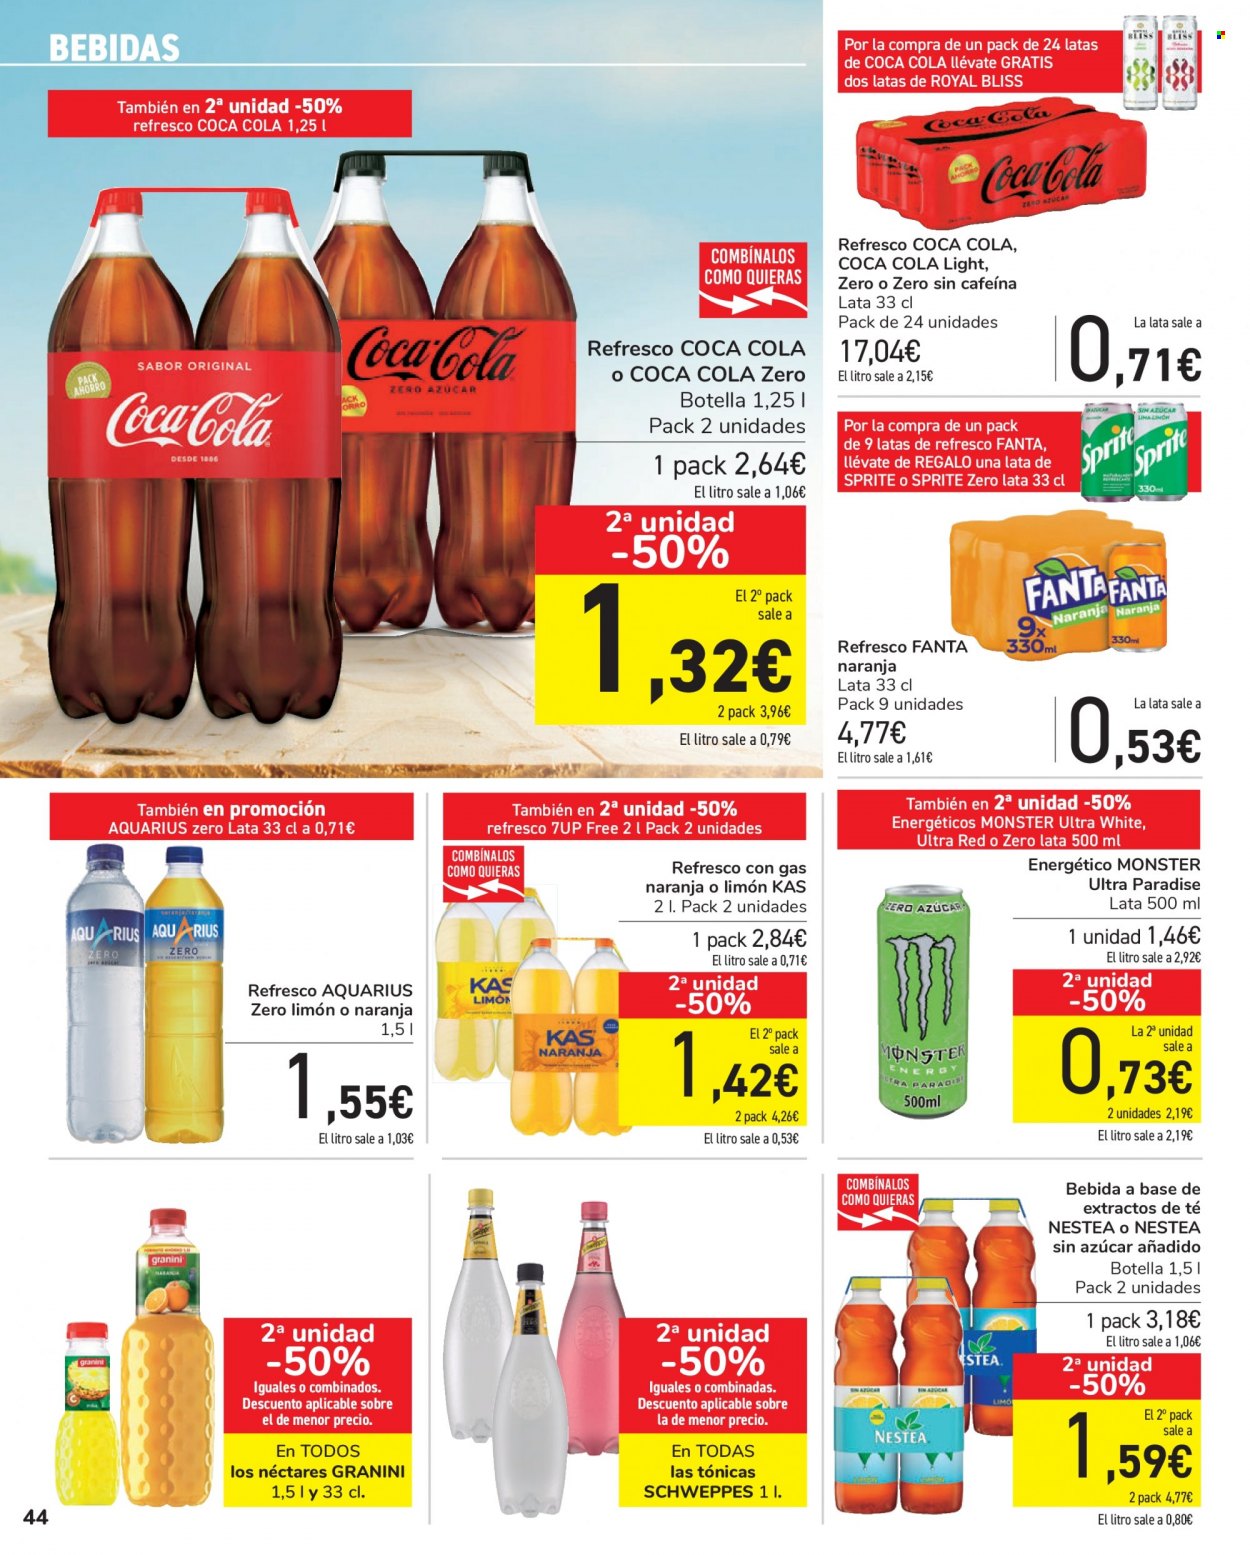 thumbnail - Folleto actual Carrefour - 10/09/21 - 22/09/21 - Ventas - Aquarius, bebida, Coca-cola, Coca-Cola Light, Fanta, Sprite, Schweppes, Nestea, Coca-Cola Zero, 7UP. Página 44.